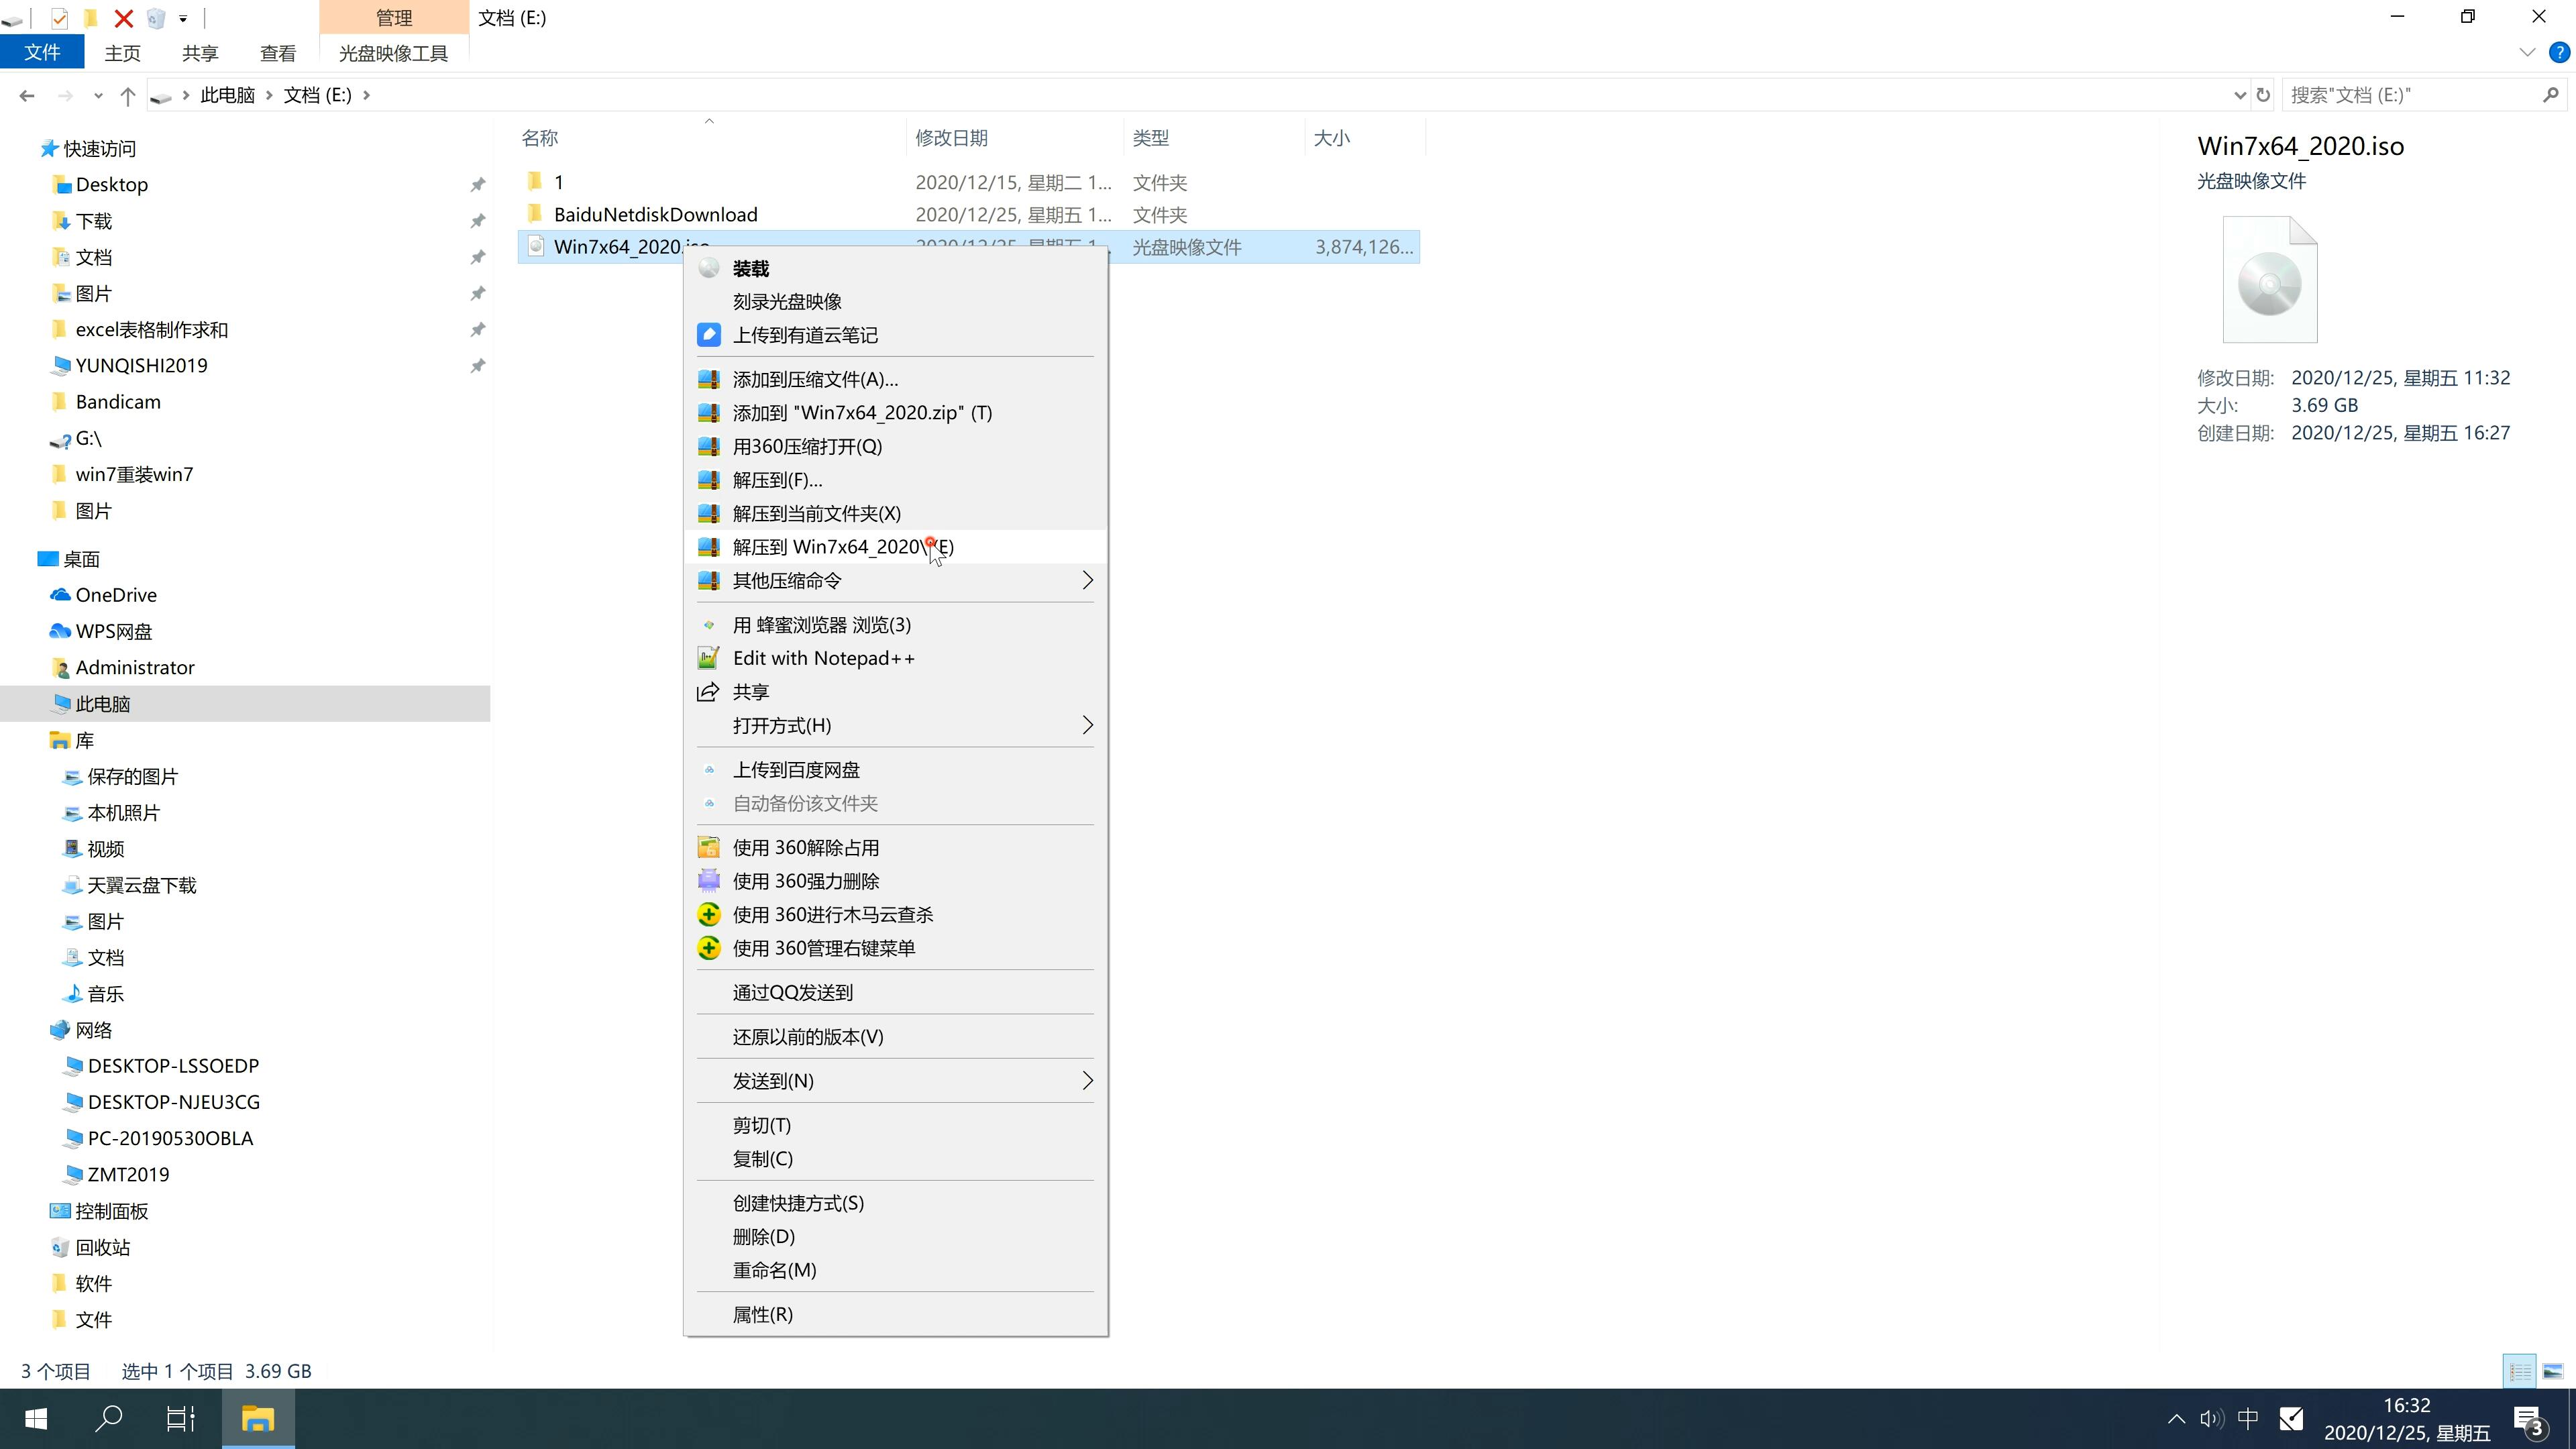 新版中关村系统  Windows10 X64 SP1 完整旗舰版 V2021.02(1)